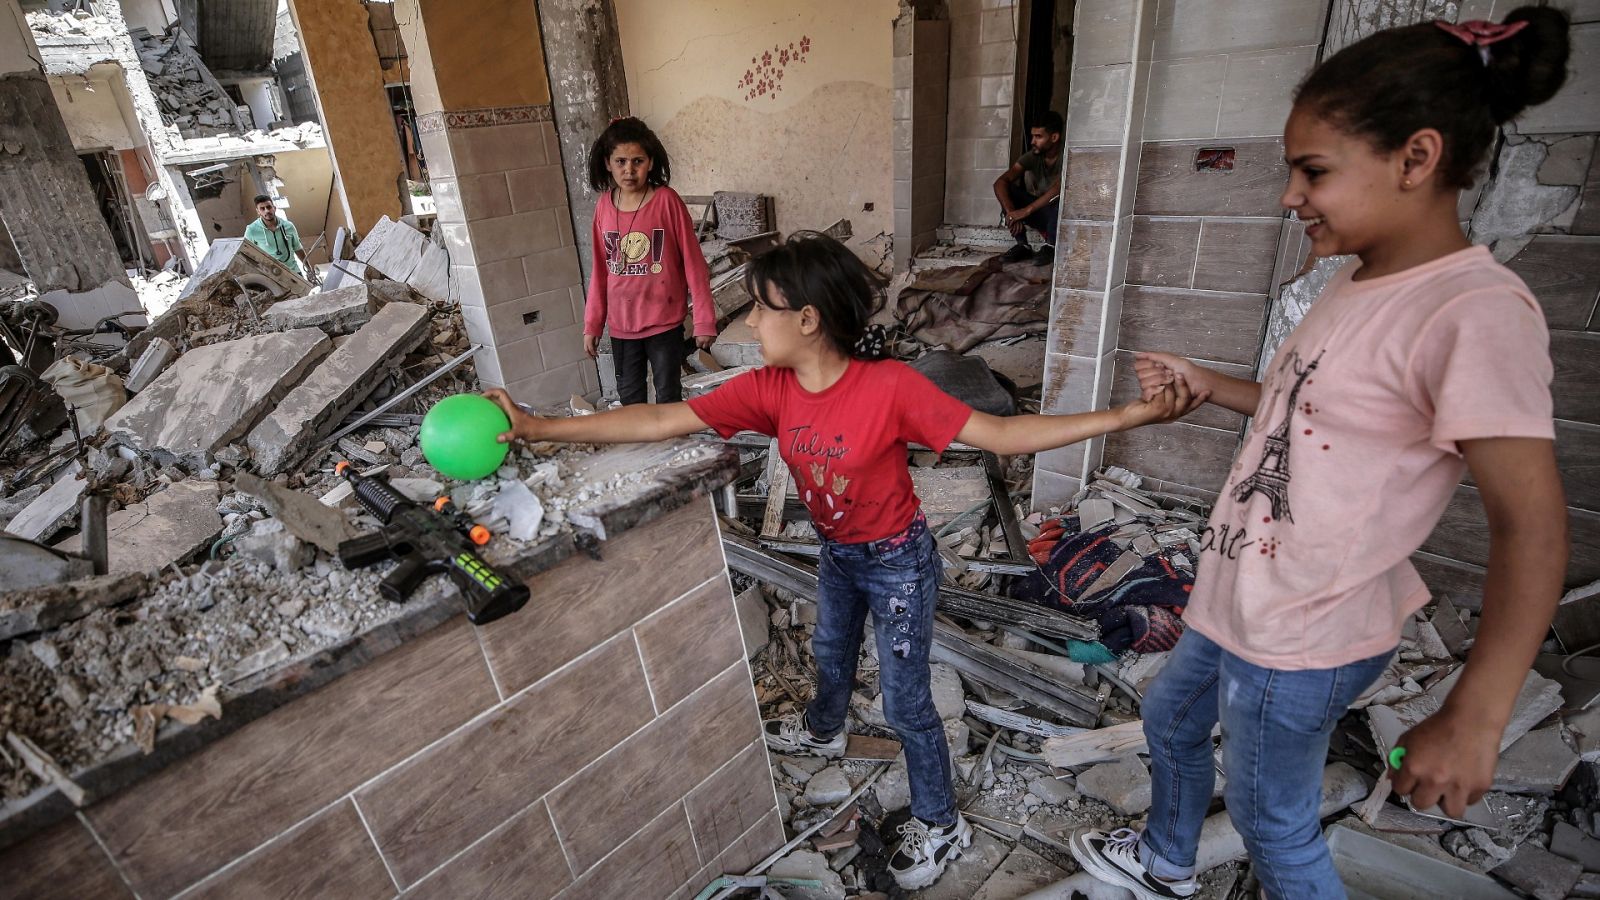 Cinco Continentes - En Gaza, daños considerables y difícil acceso al agua - Escuchar ahora